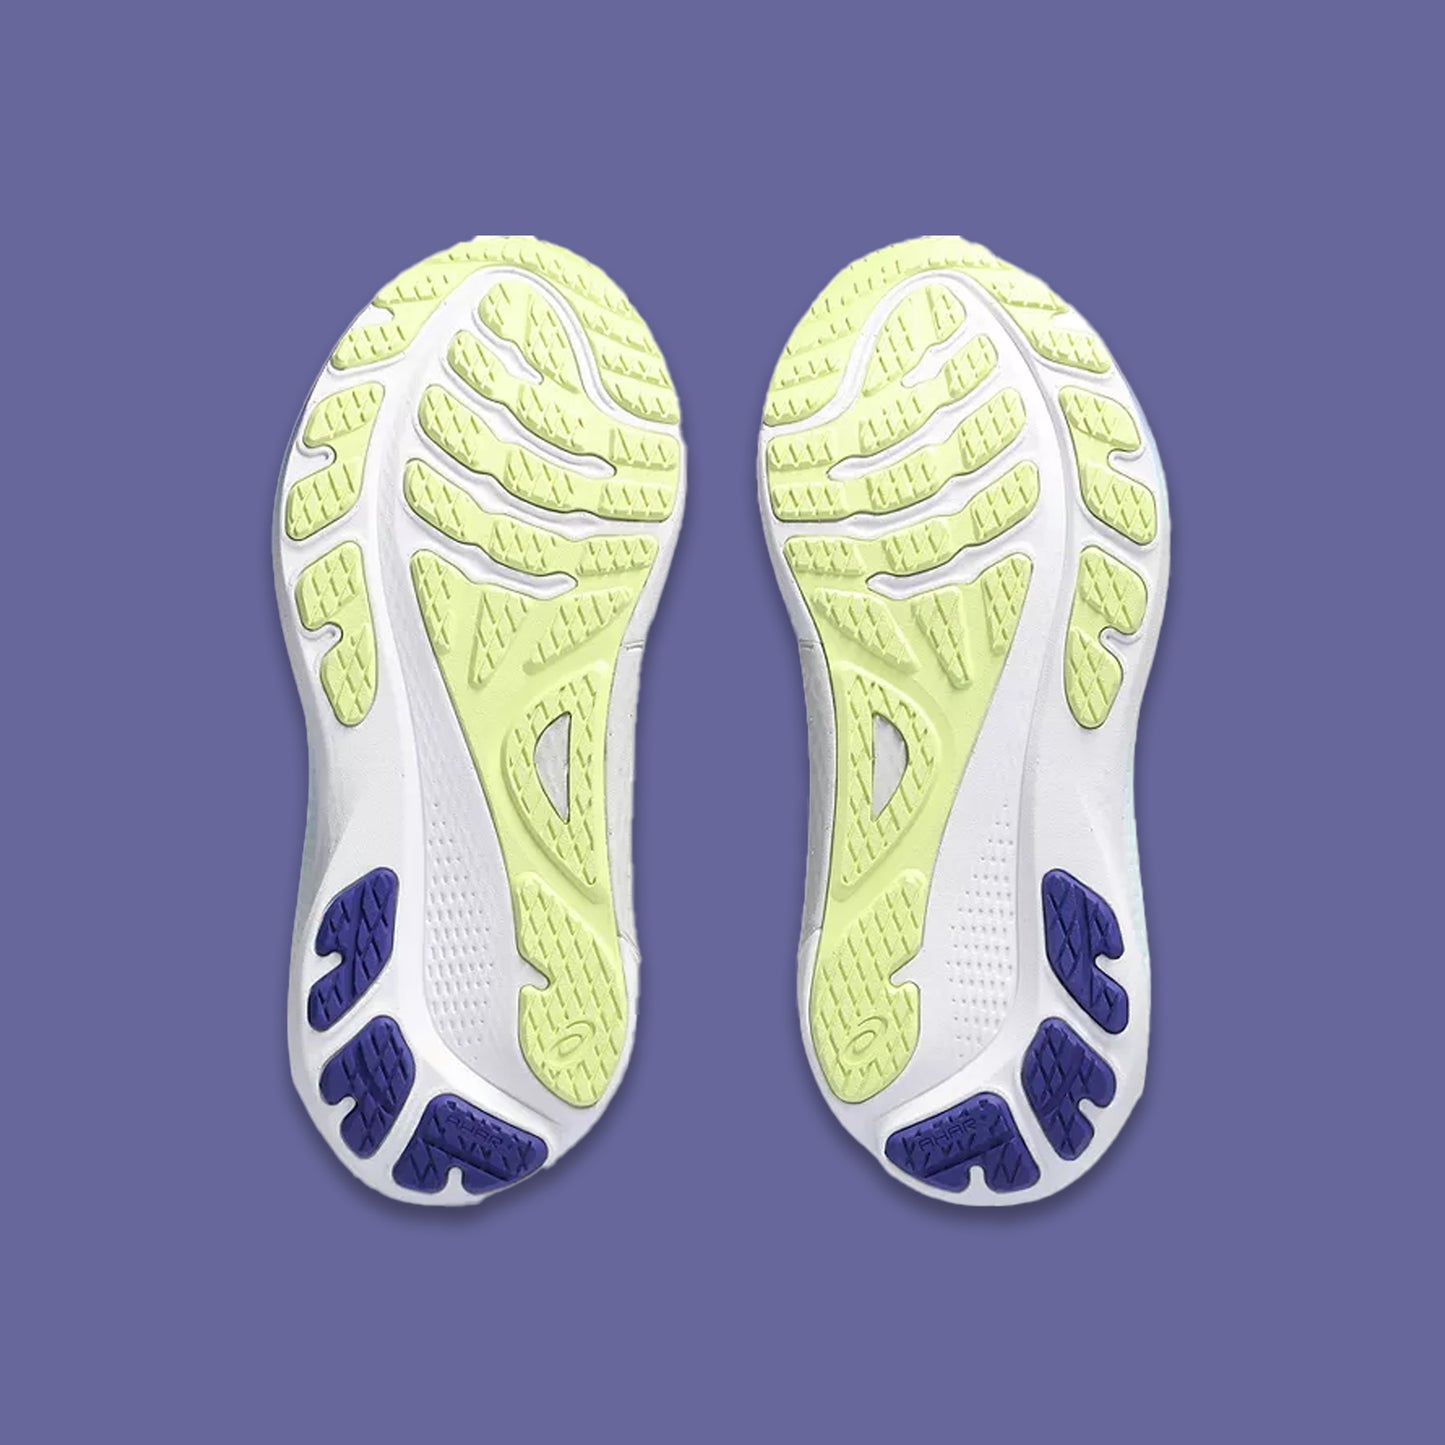 Women's Gel Kayano 30 - Maximum Cushion Stability Running Shoes